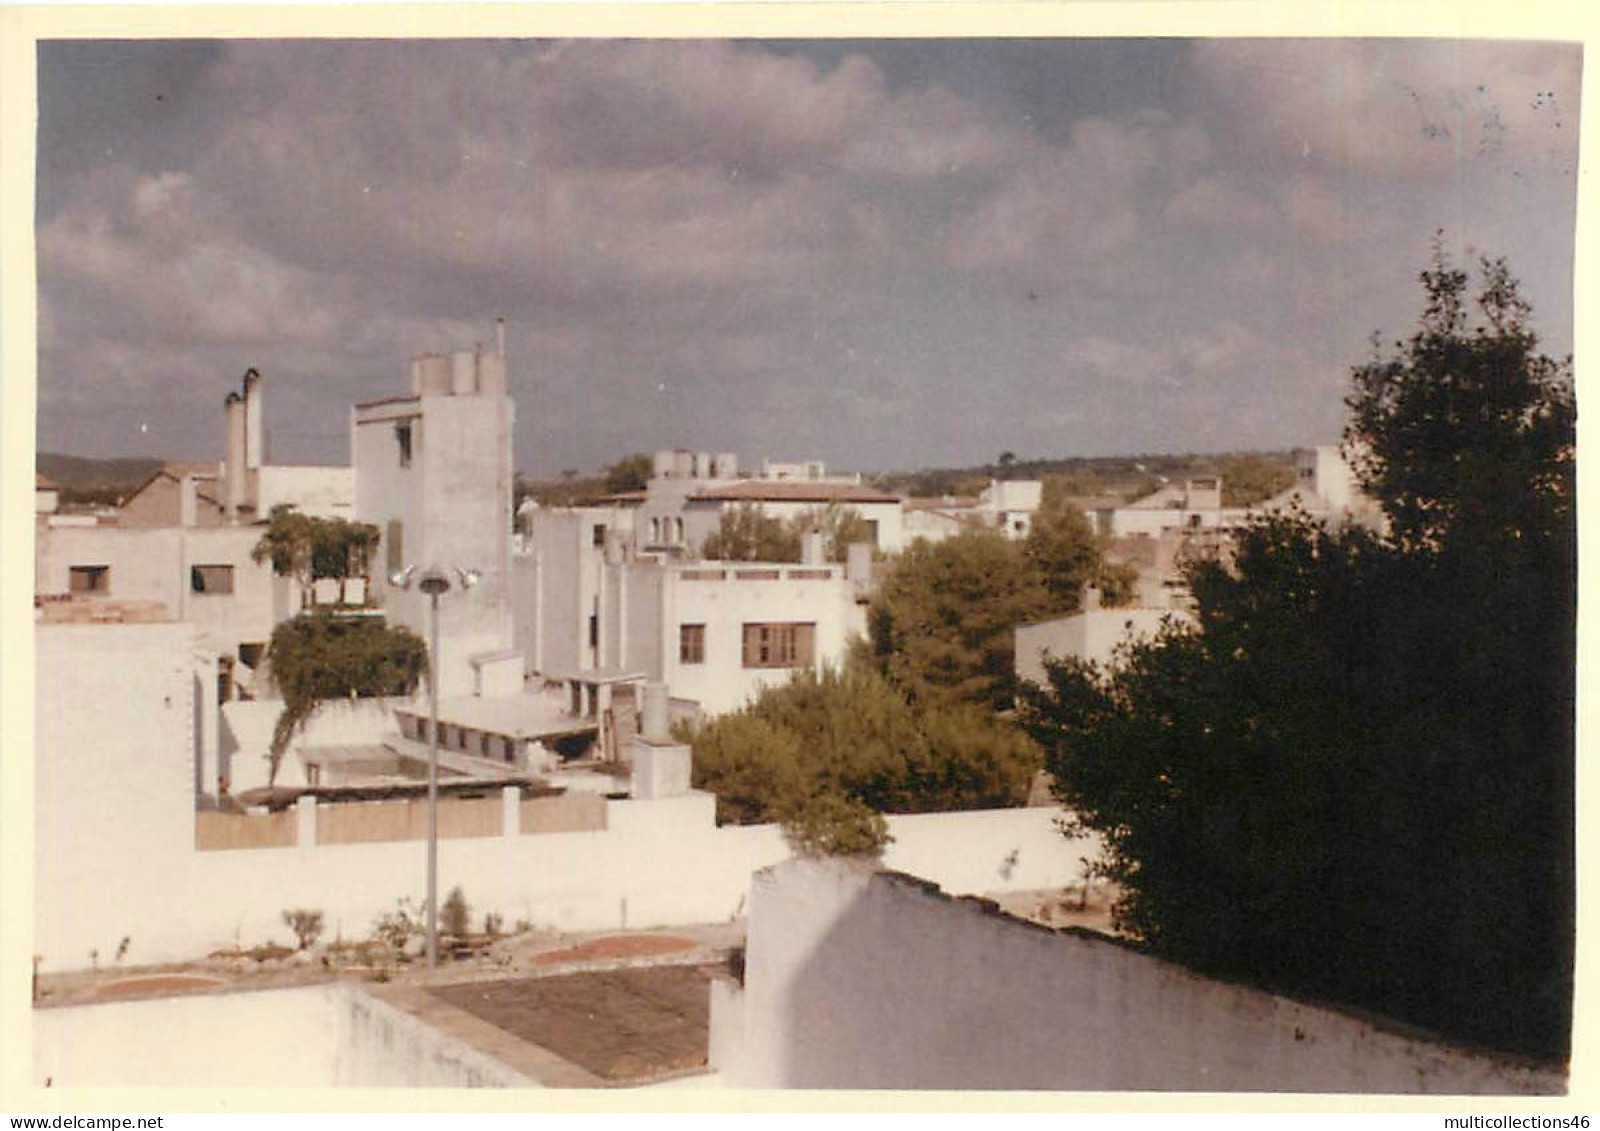 110524A - PHOTO AMATEUR 1960 - ESPAGNE SITGES Vue De La Terrasse Le Matin - Europe